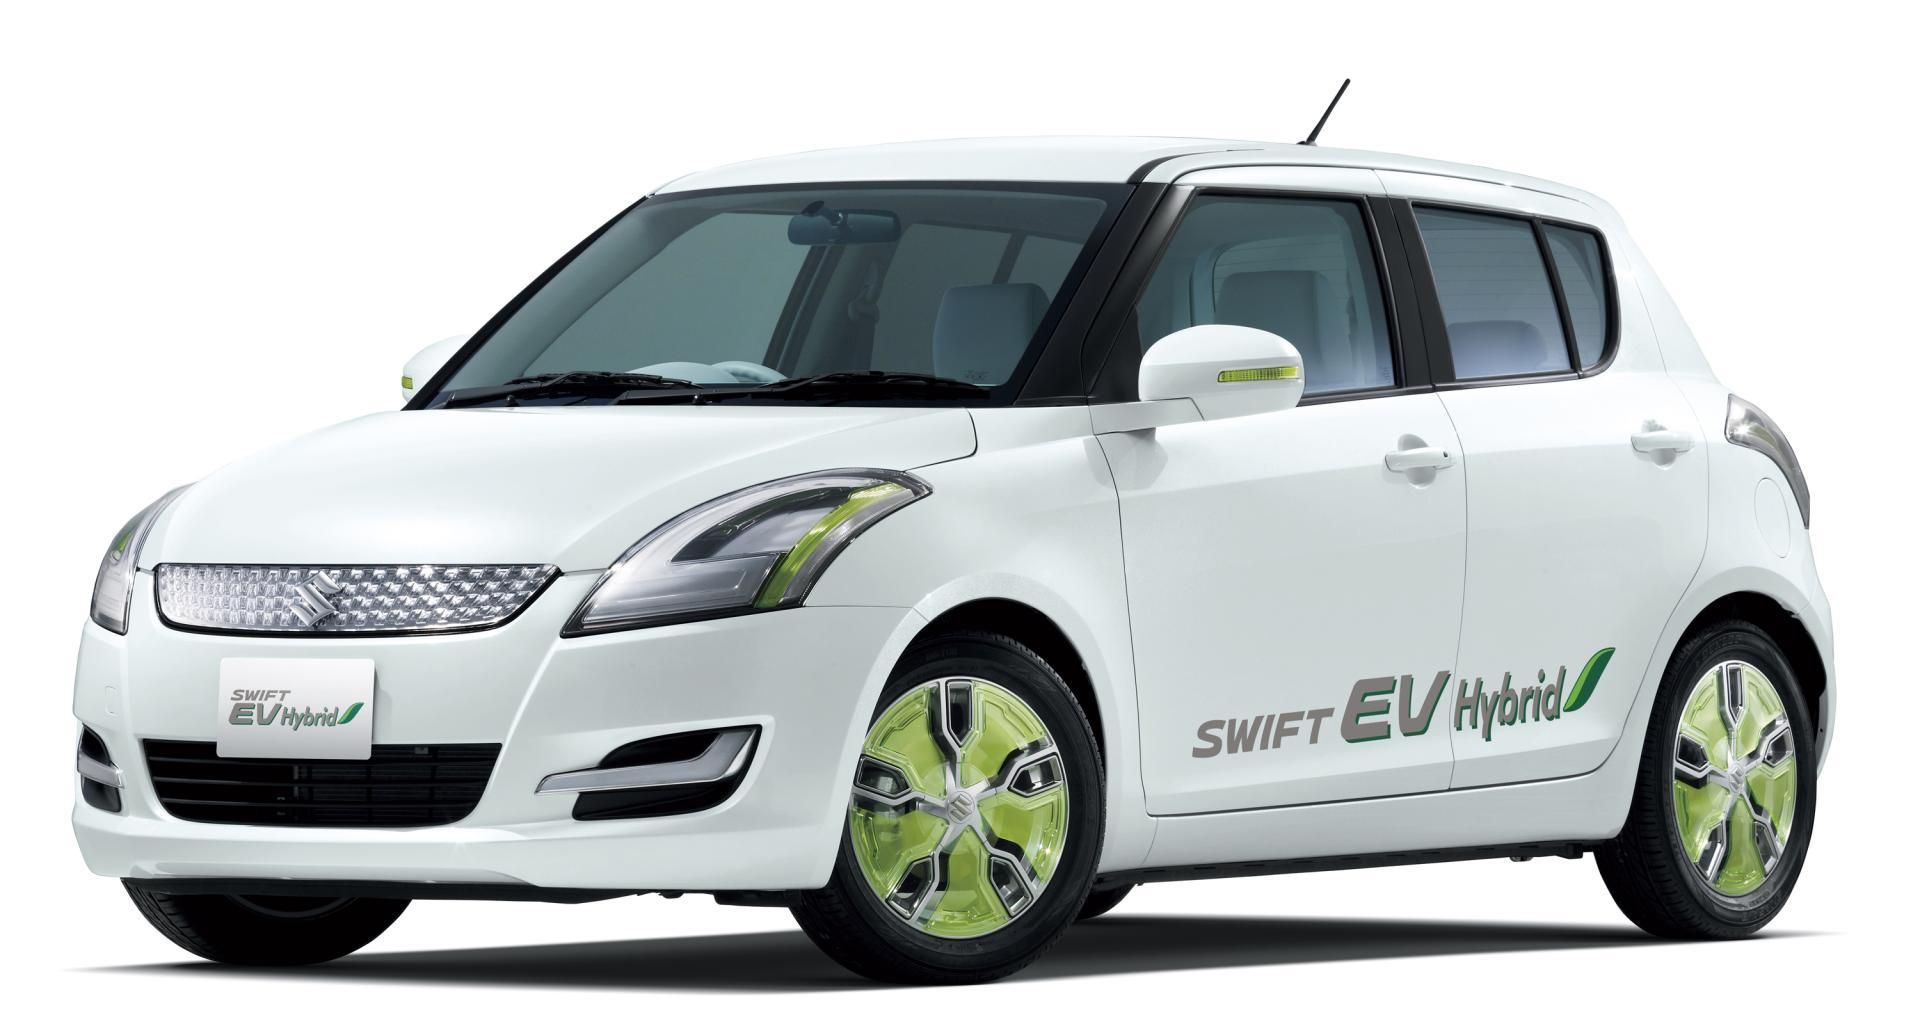  Suzuki Swift EV Hybrid